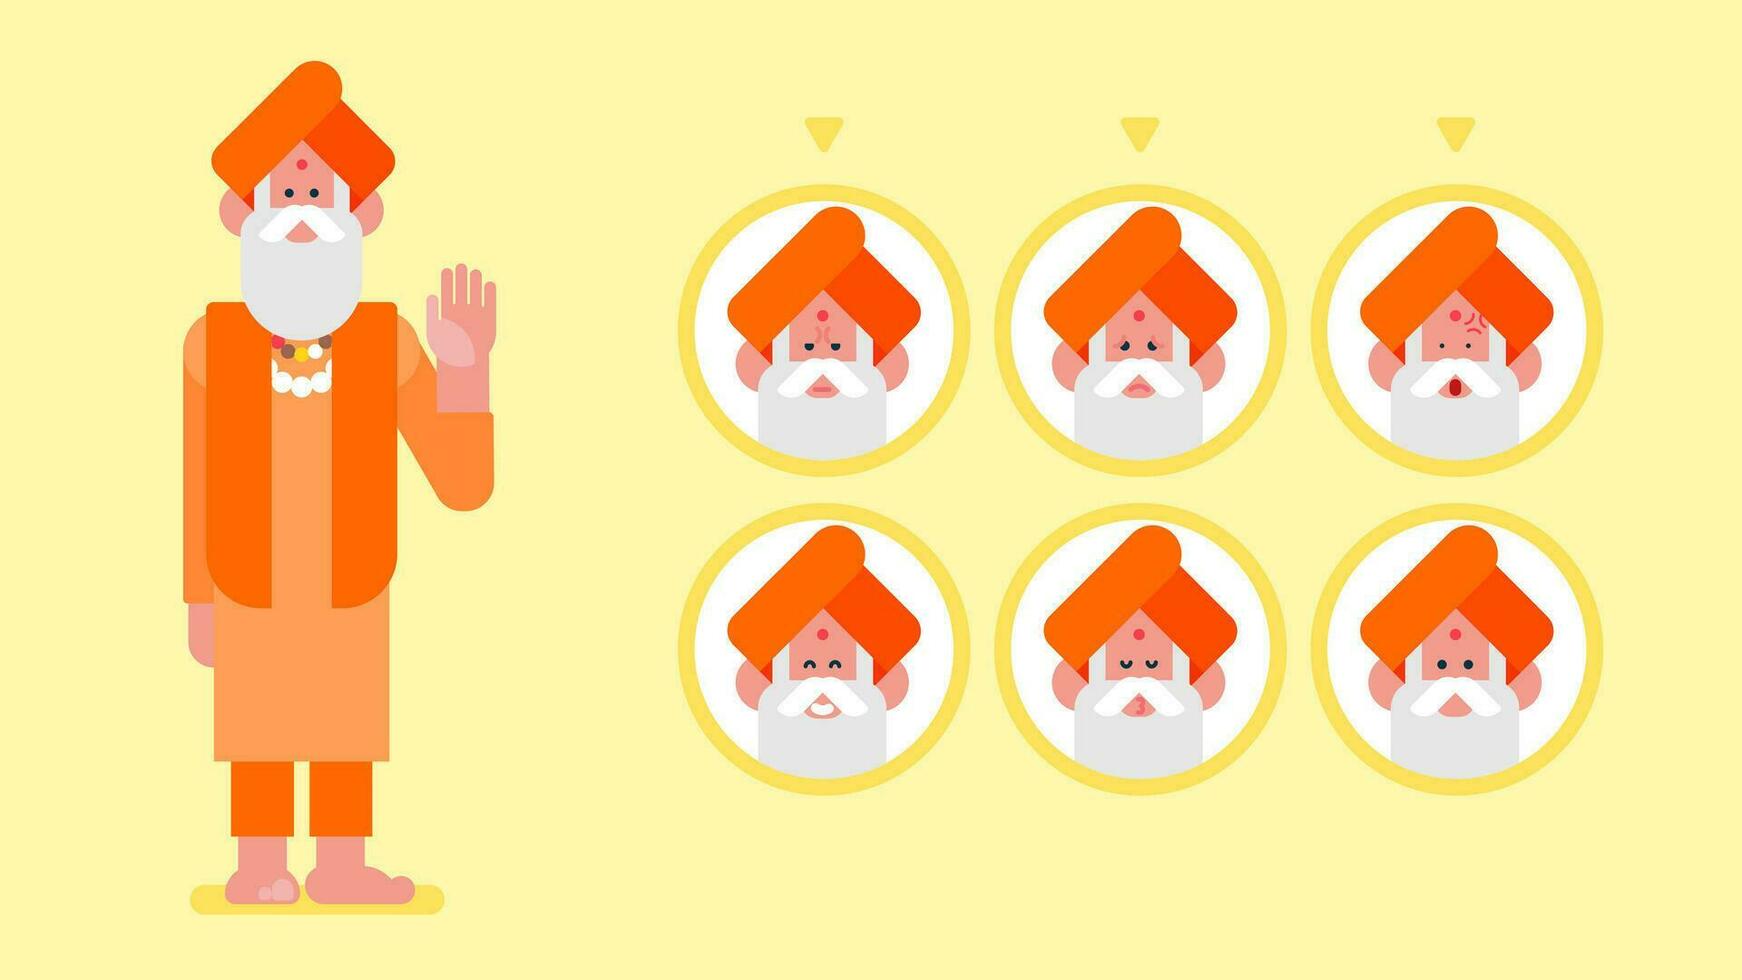 Hindoe monnik met saffraan kleren van hindoeïsme, vlak salie heilige rishi, Indisch heilig monnik sadhu in verschillend emoties, portret van sadhu in Indië, vlak avatar vector